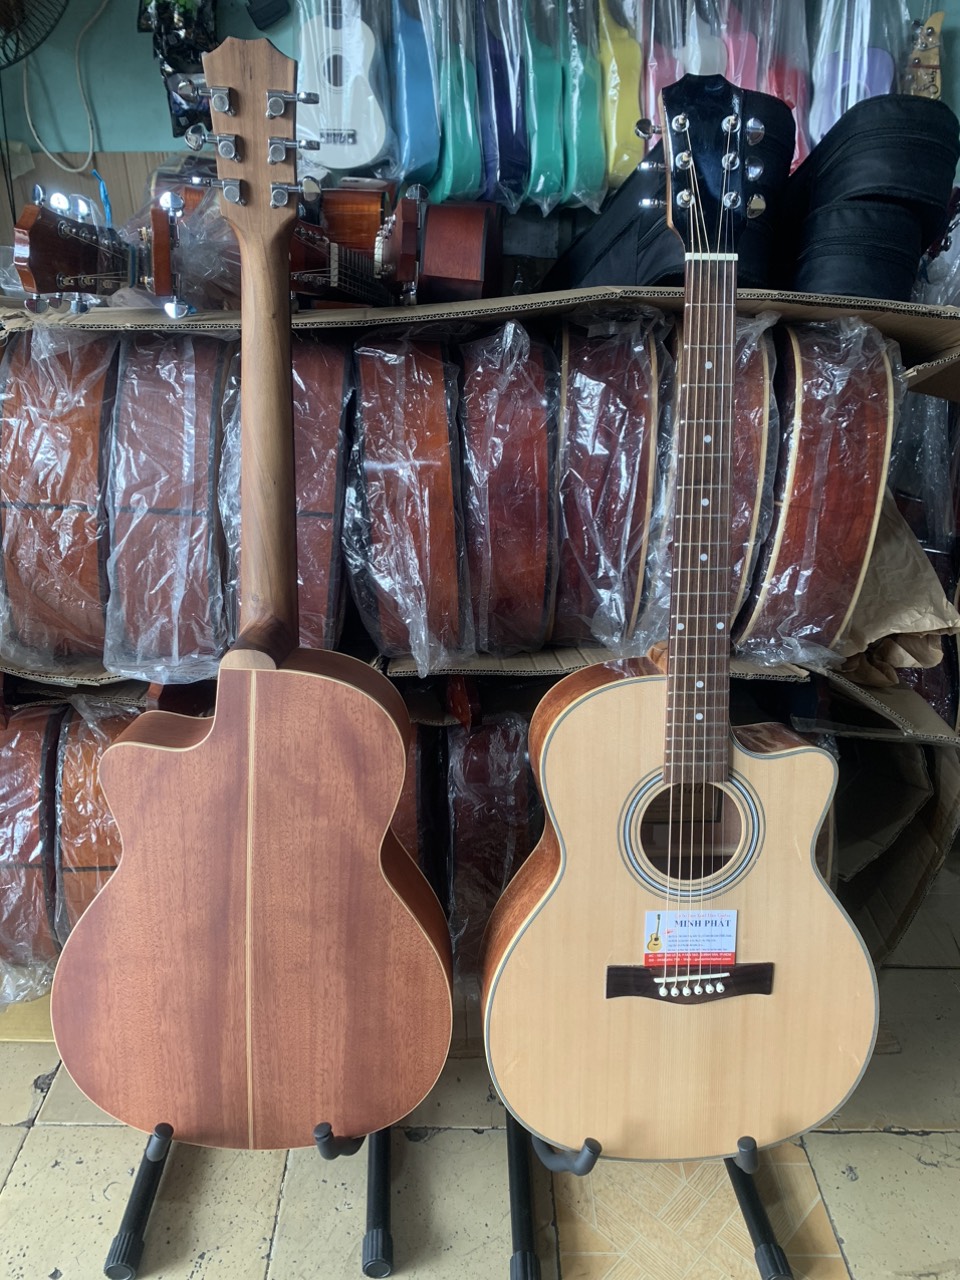 Xưởng bán đàn guitar ở TPHCM - Nhạc Cụ Minh Phát Khu vực quận Bình Tân